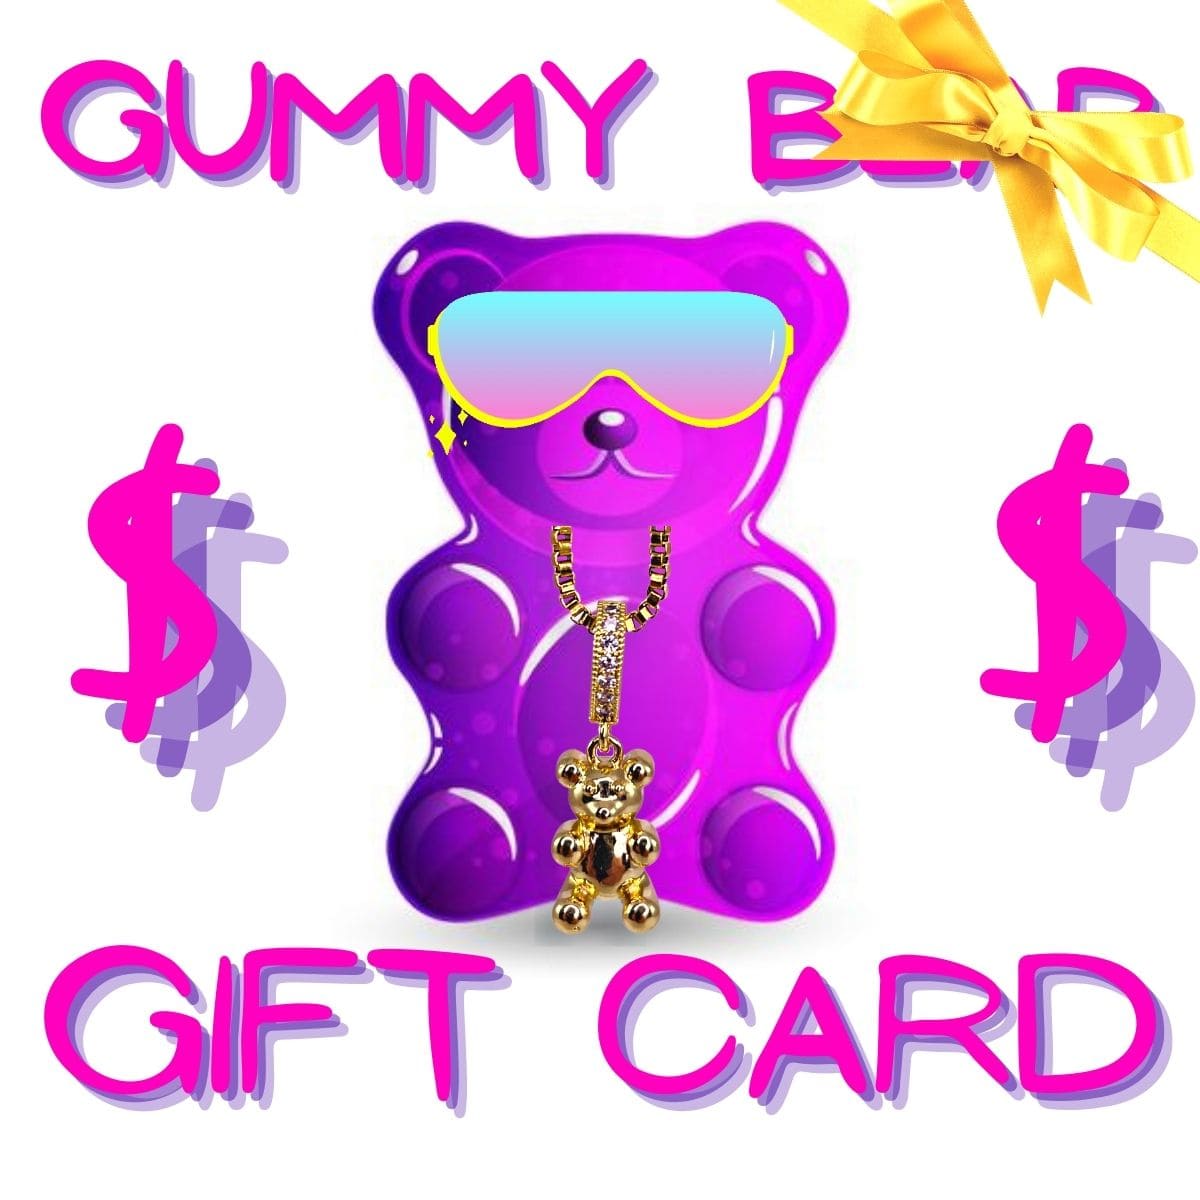 gummy bear bling gift cards - gummy bear bling